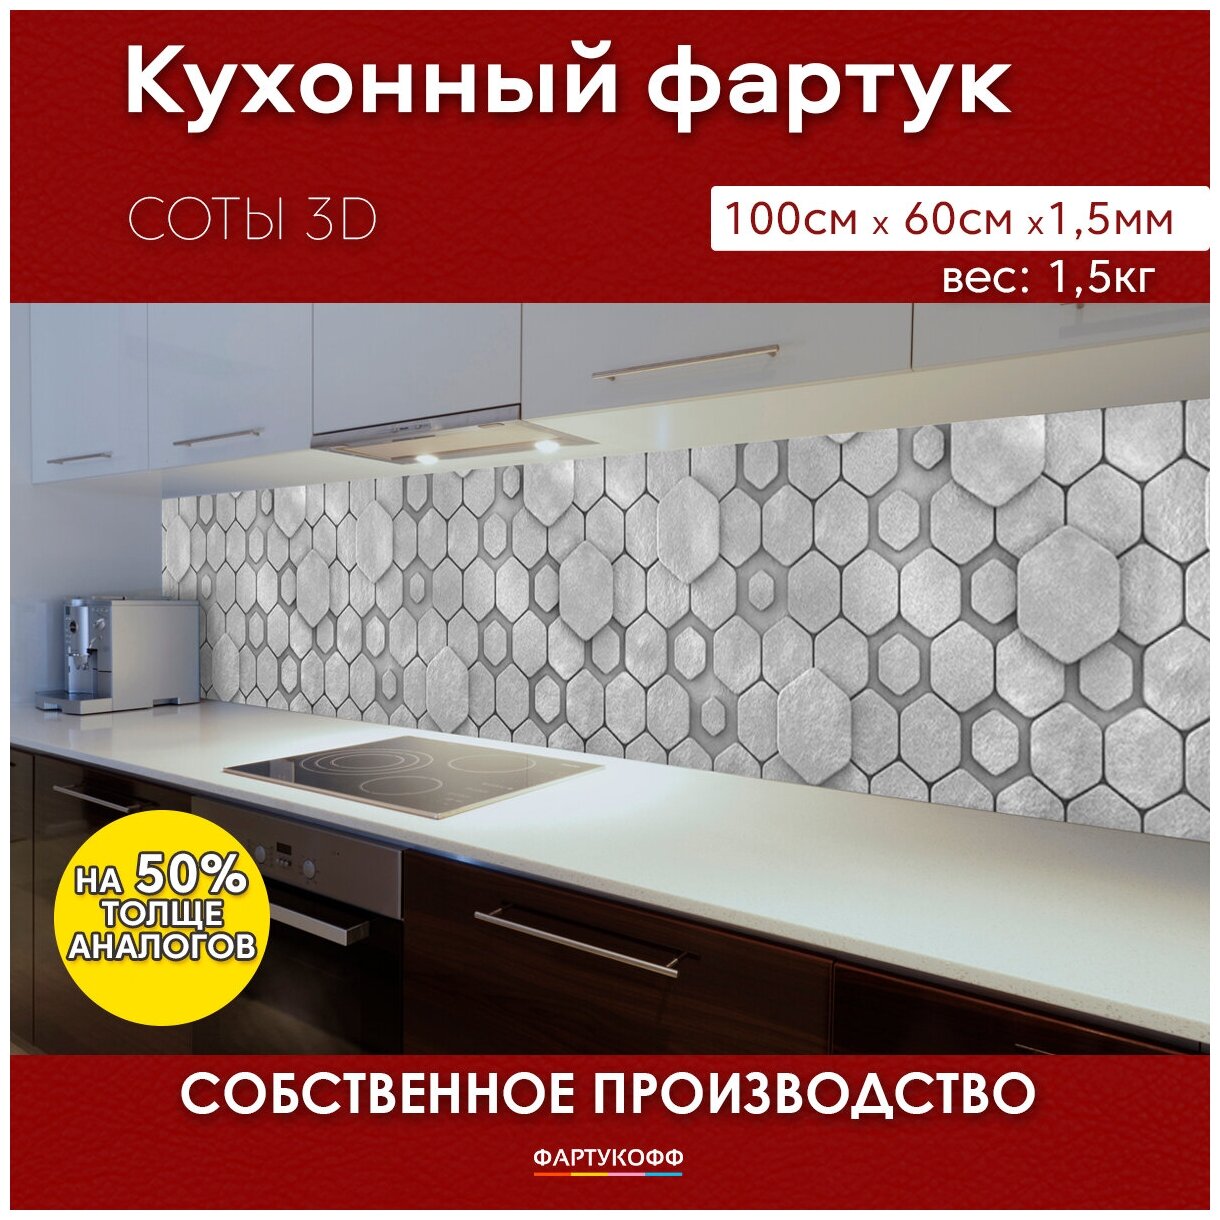 Кухонный фартук с 3D покрытием "Соты 3D" 1000*600*1,5 мм, АБС пластик, термоперевод